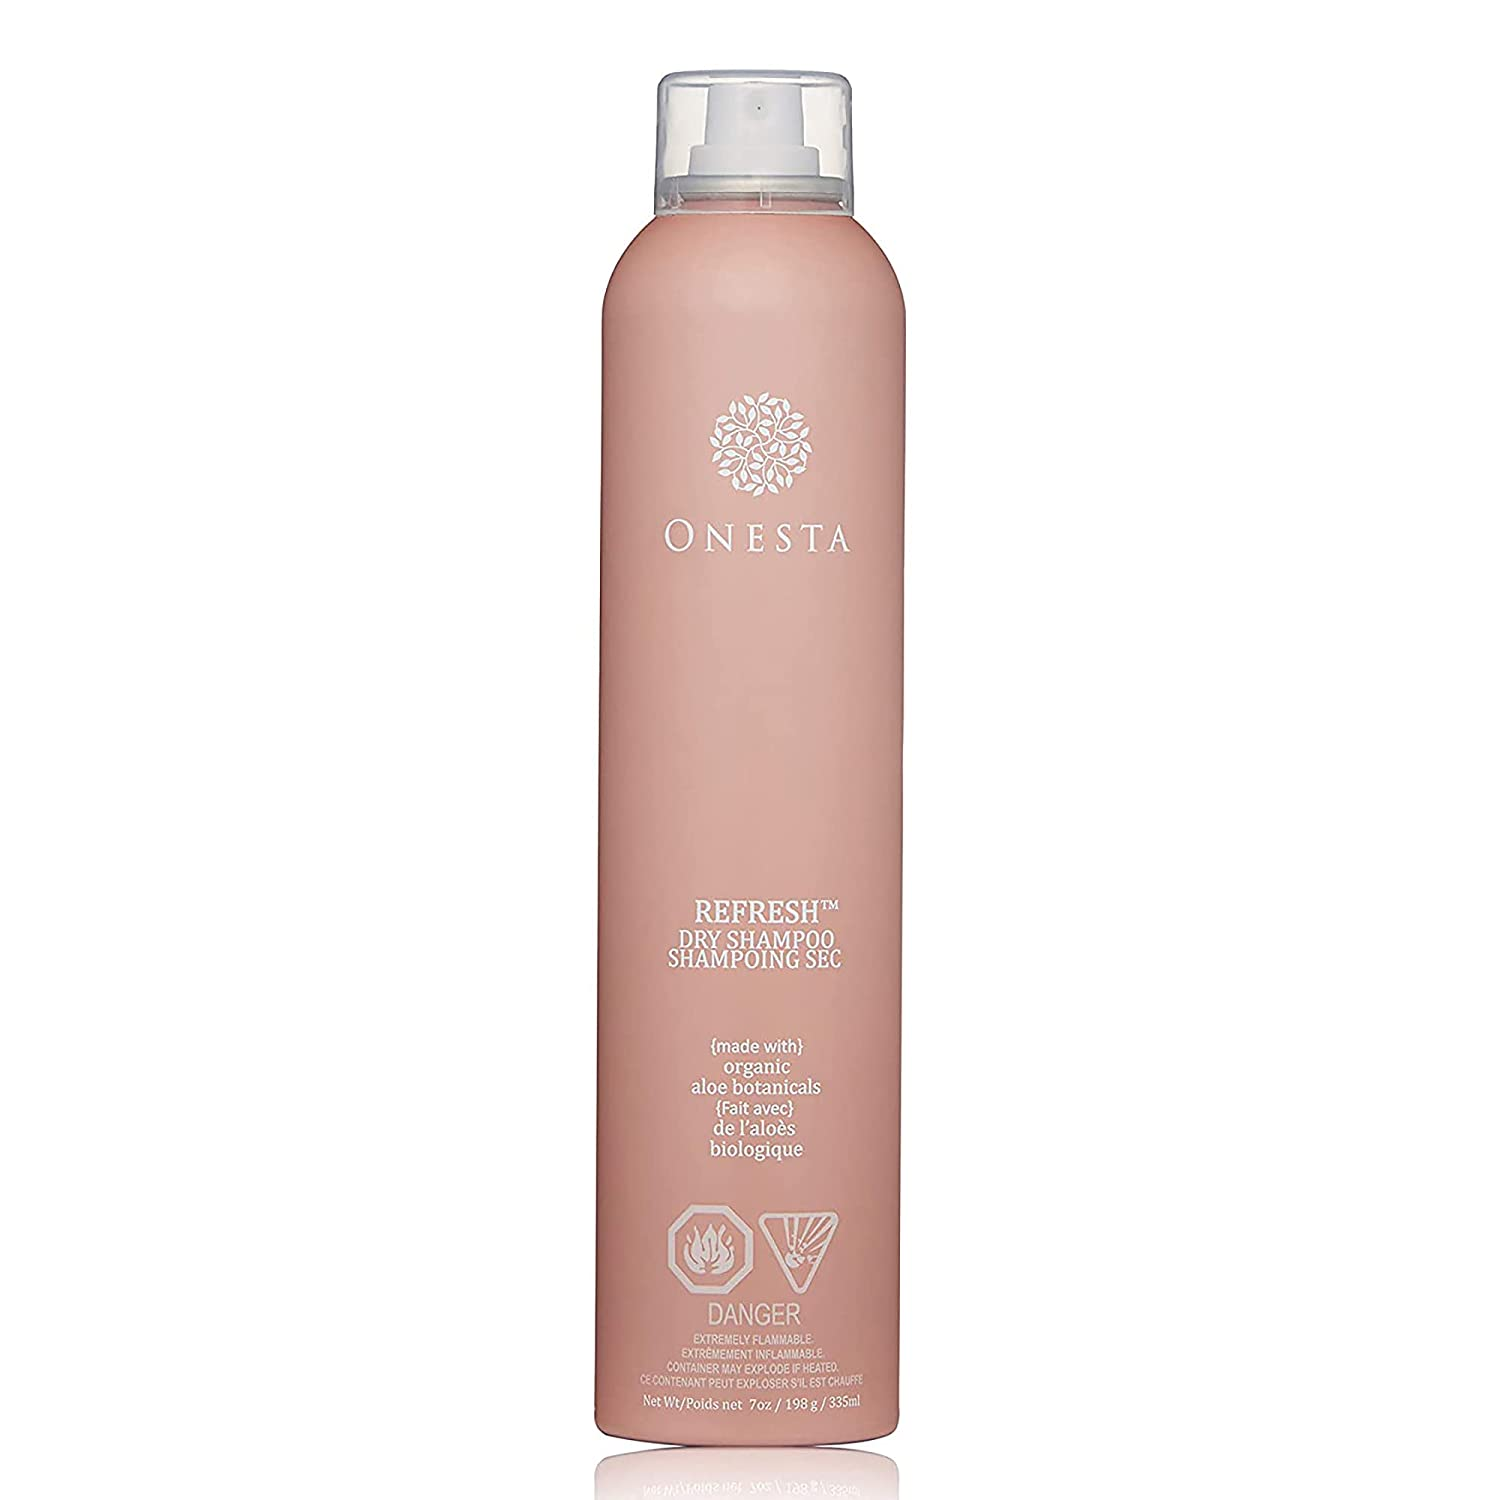 Onesta Refresh Dry Shampoo, 7 Oz. - $30.00